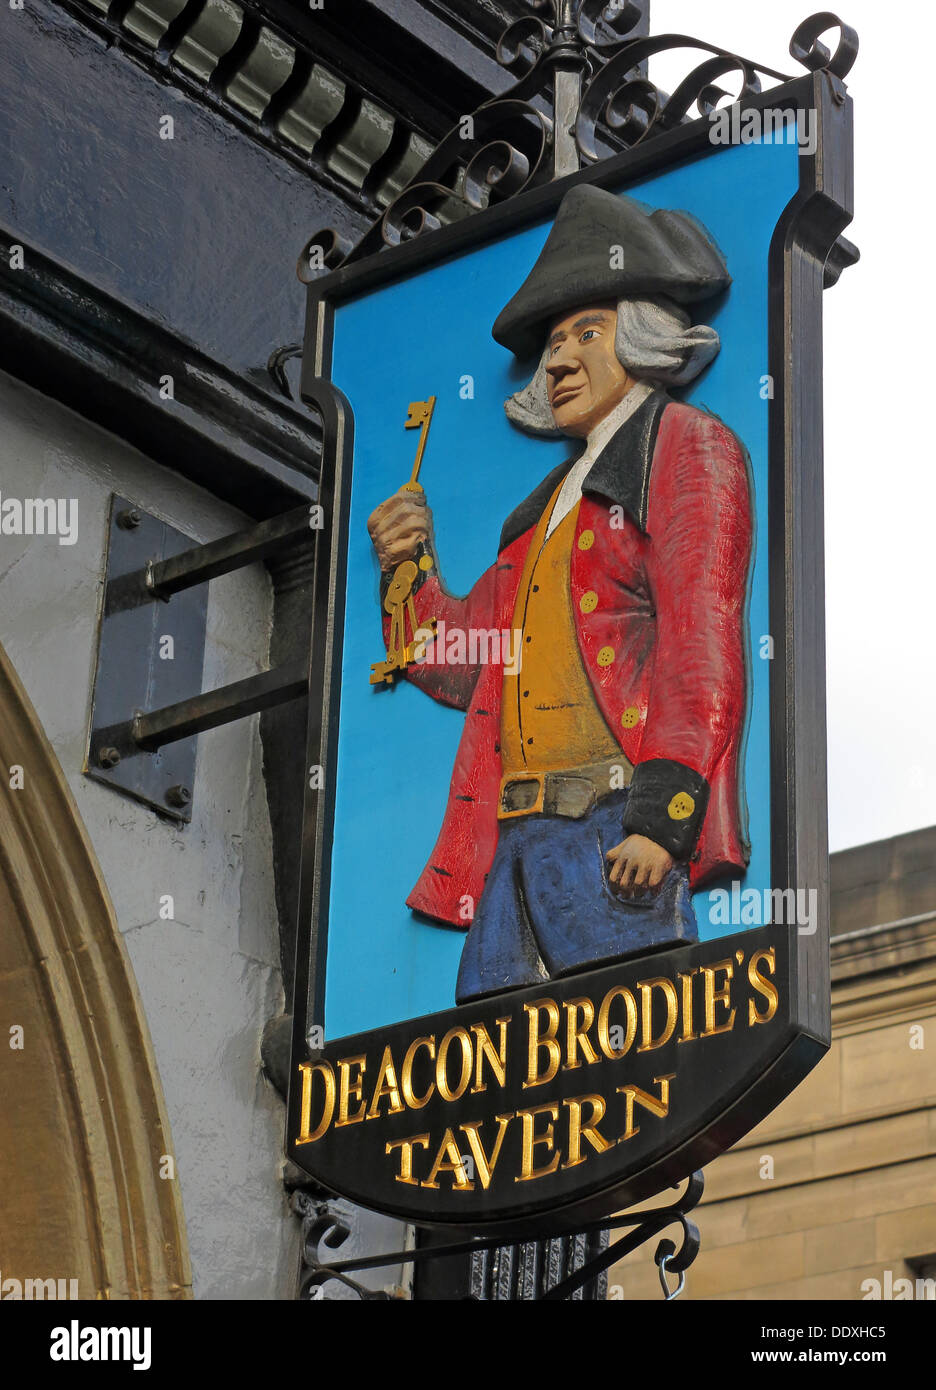 Deacon Brodies Tavern Signe, Royal Mile, Éd., la Ville d'Edinburgh, Ecosse, Royaume-Uni Banque D'Images